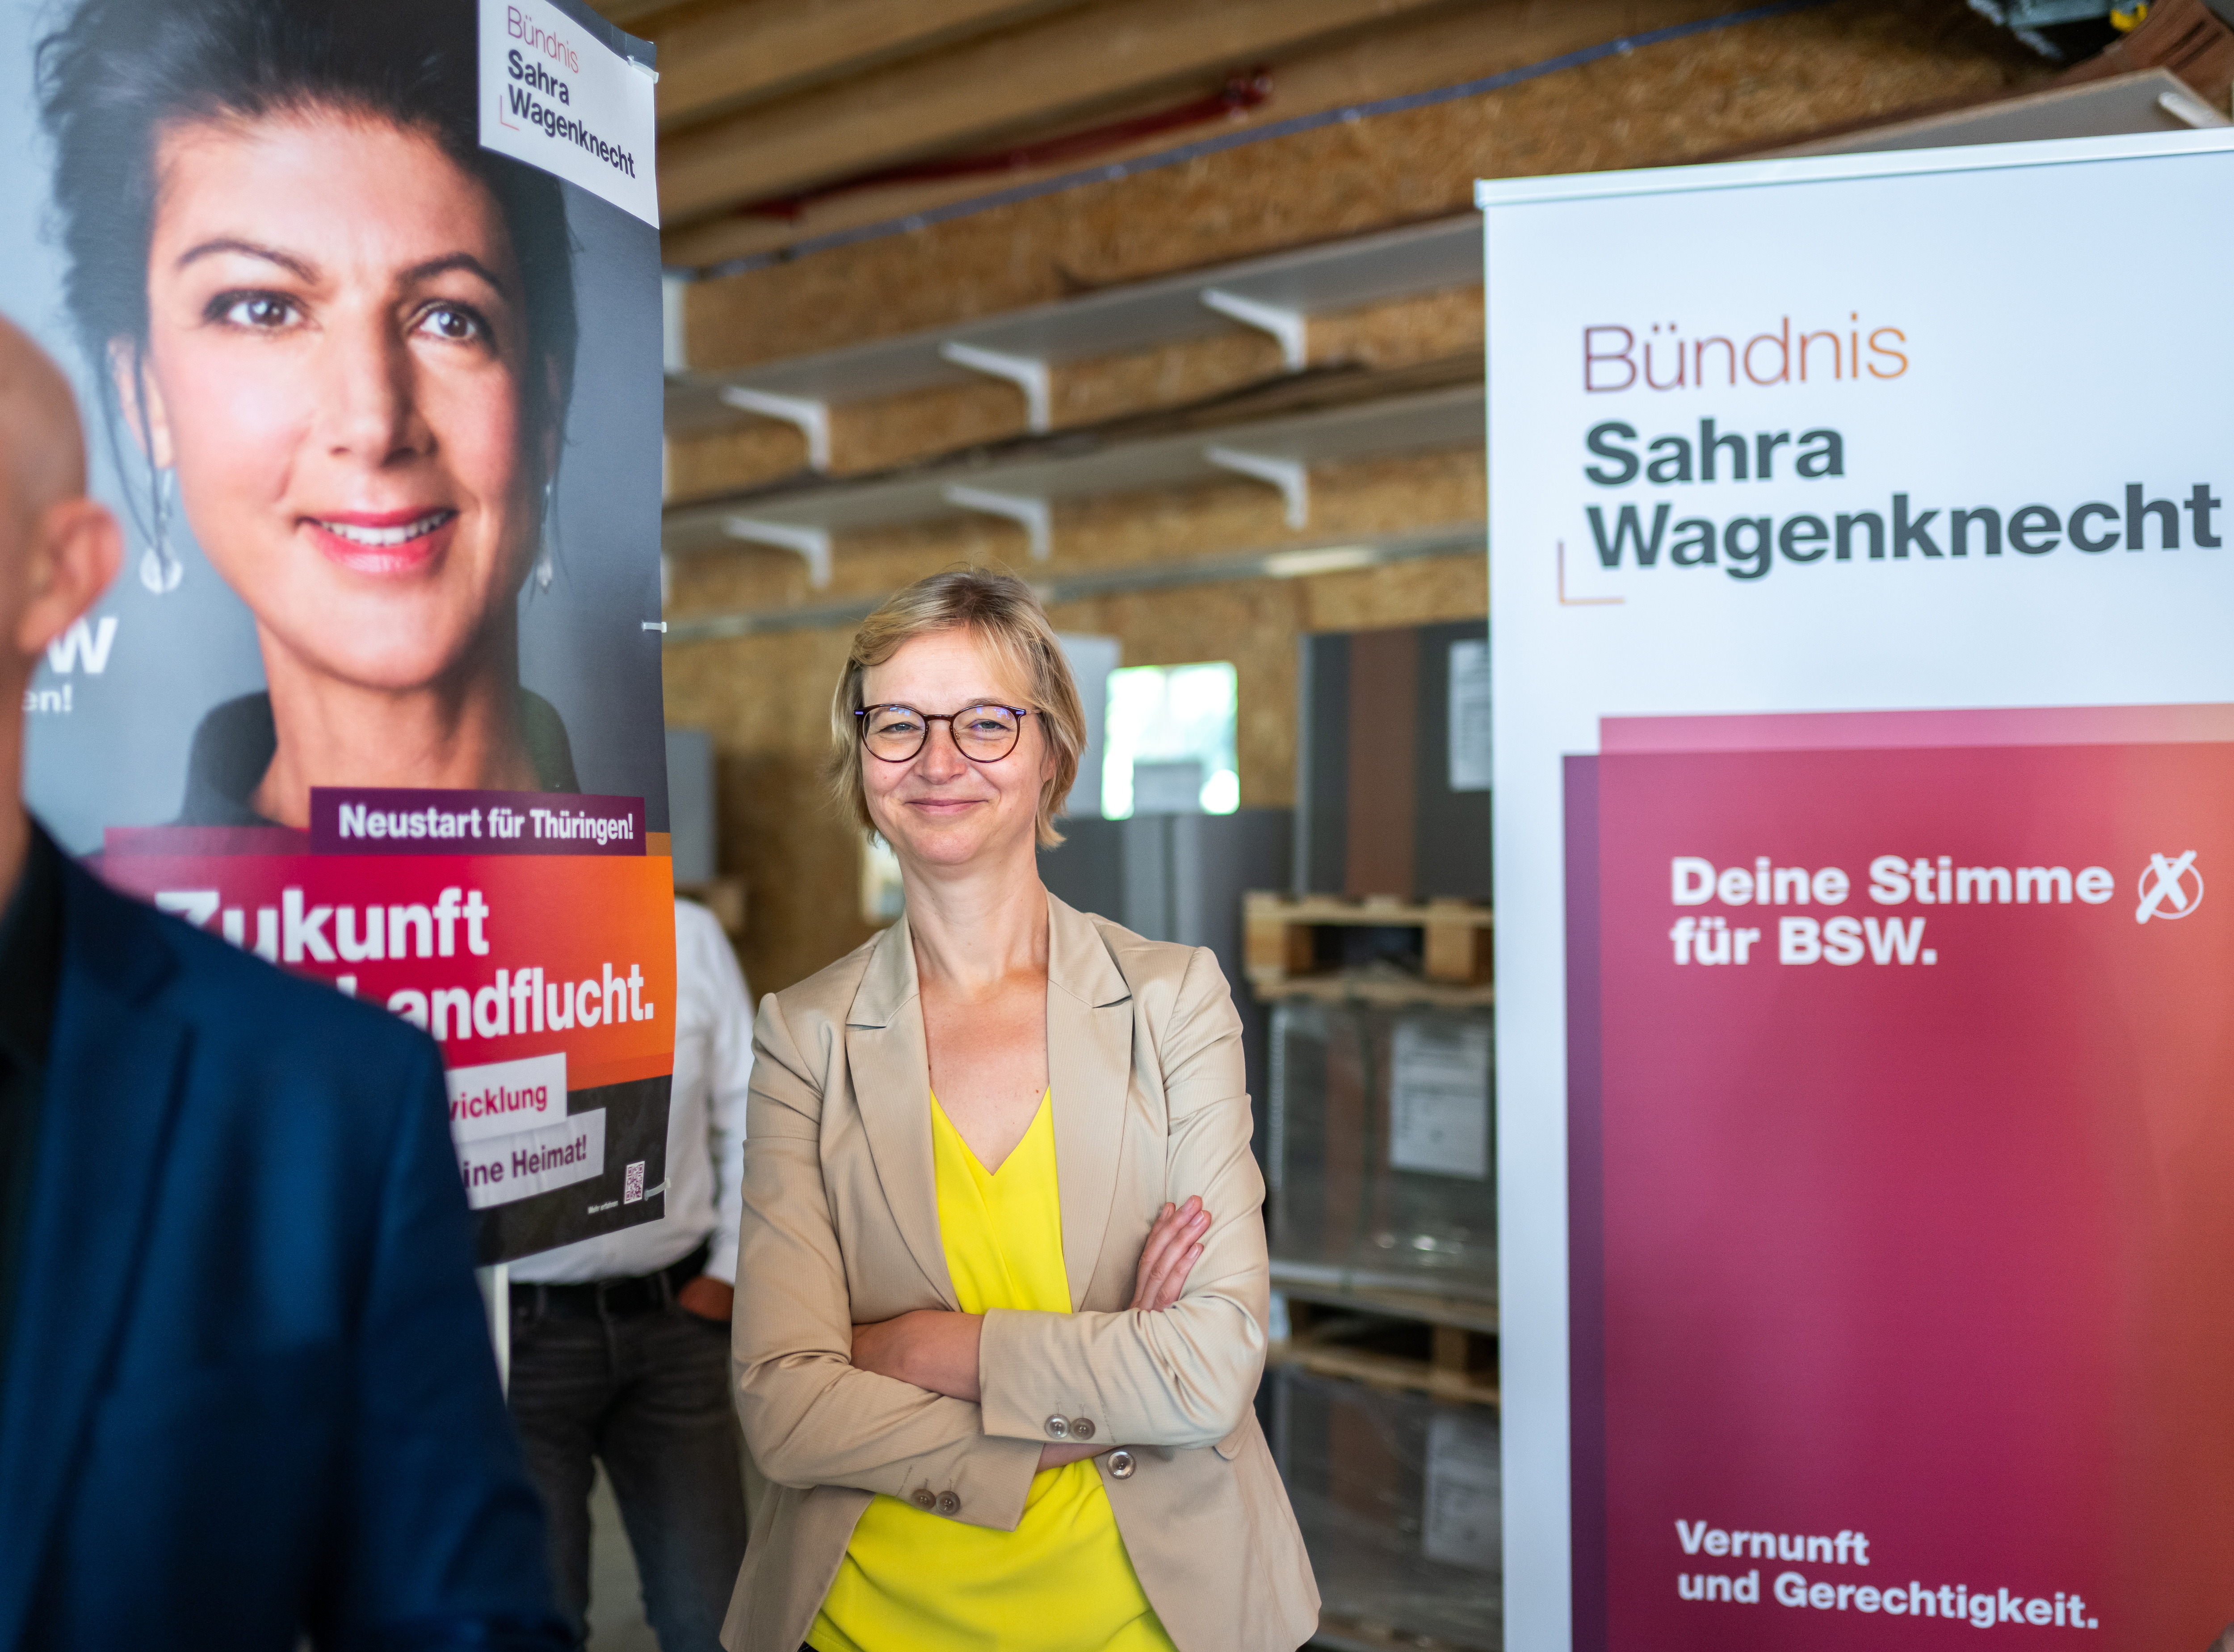 Landtagswahlen-im-September-Wagenknecht-auf-Kuschelkurs